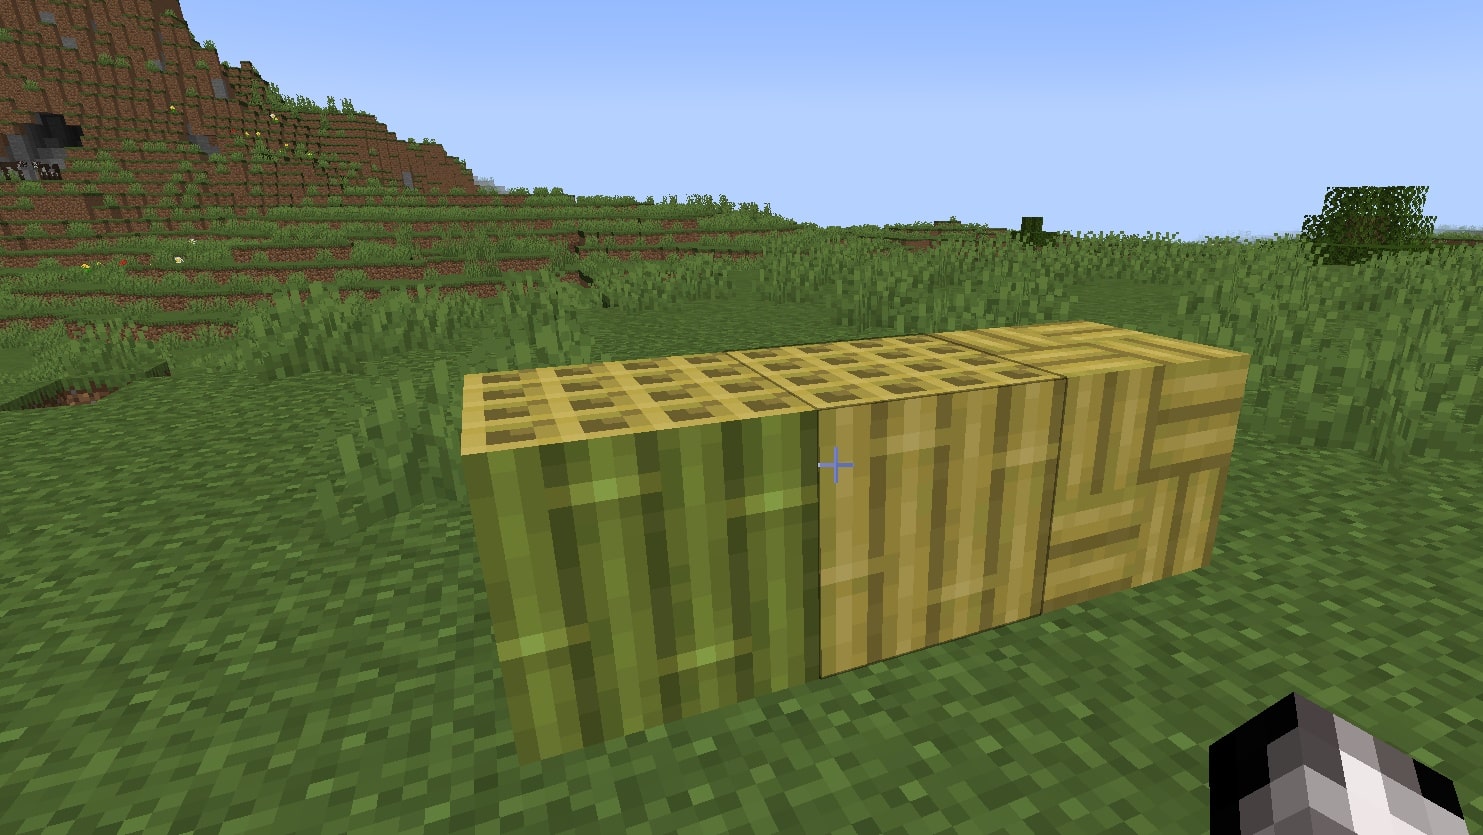 (От ляво на дясно: бамбуково блокче, бамбуково блокче с ивици, бамбукова мозайка.)